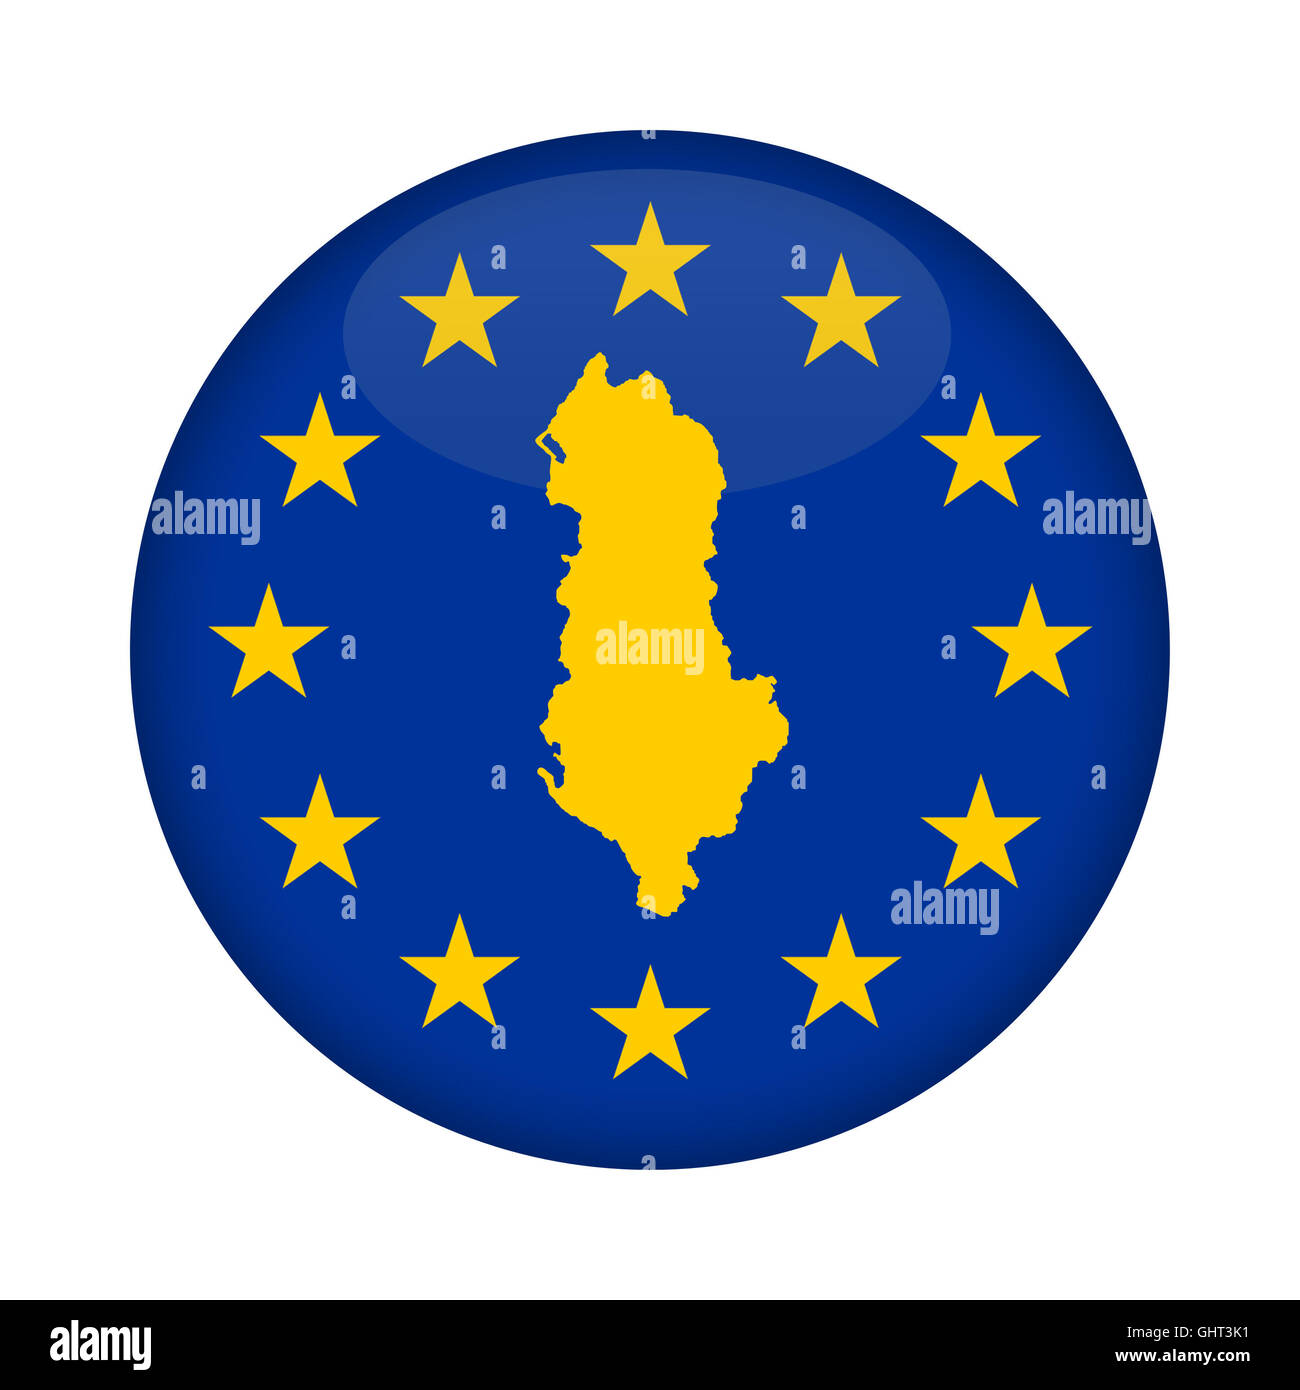 Albanien Karte auf Knopfdruck Europäische Union Flag isoliert auf einem weißen Hintergrund. Stockfoto